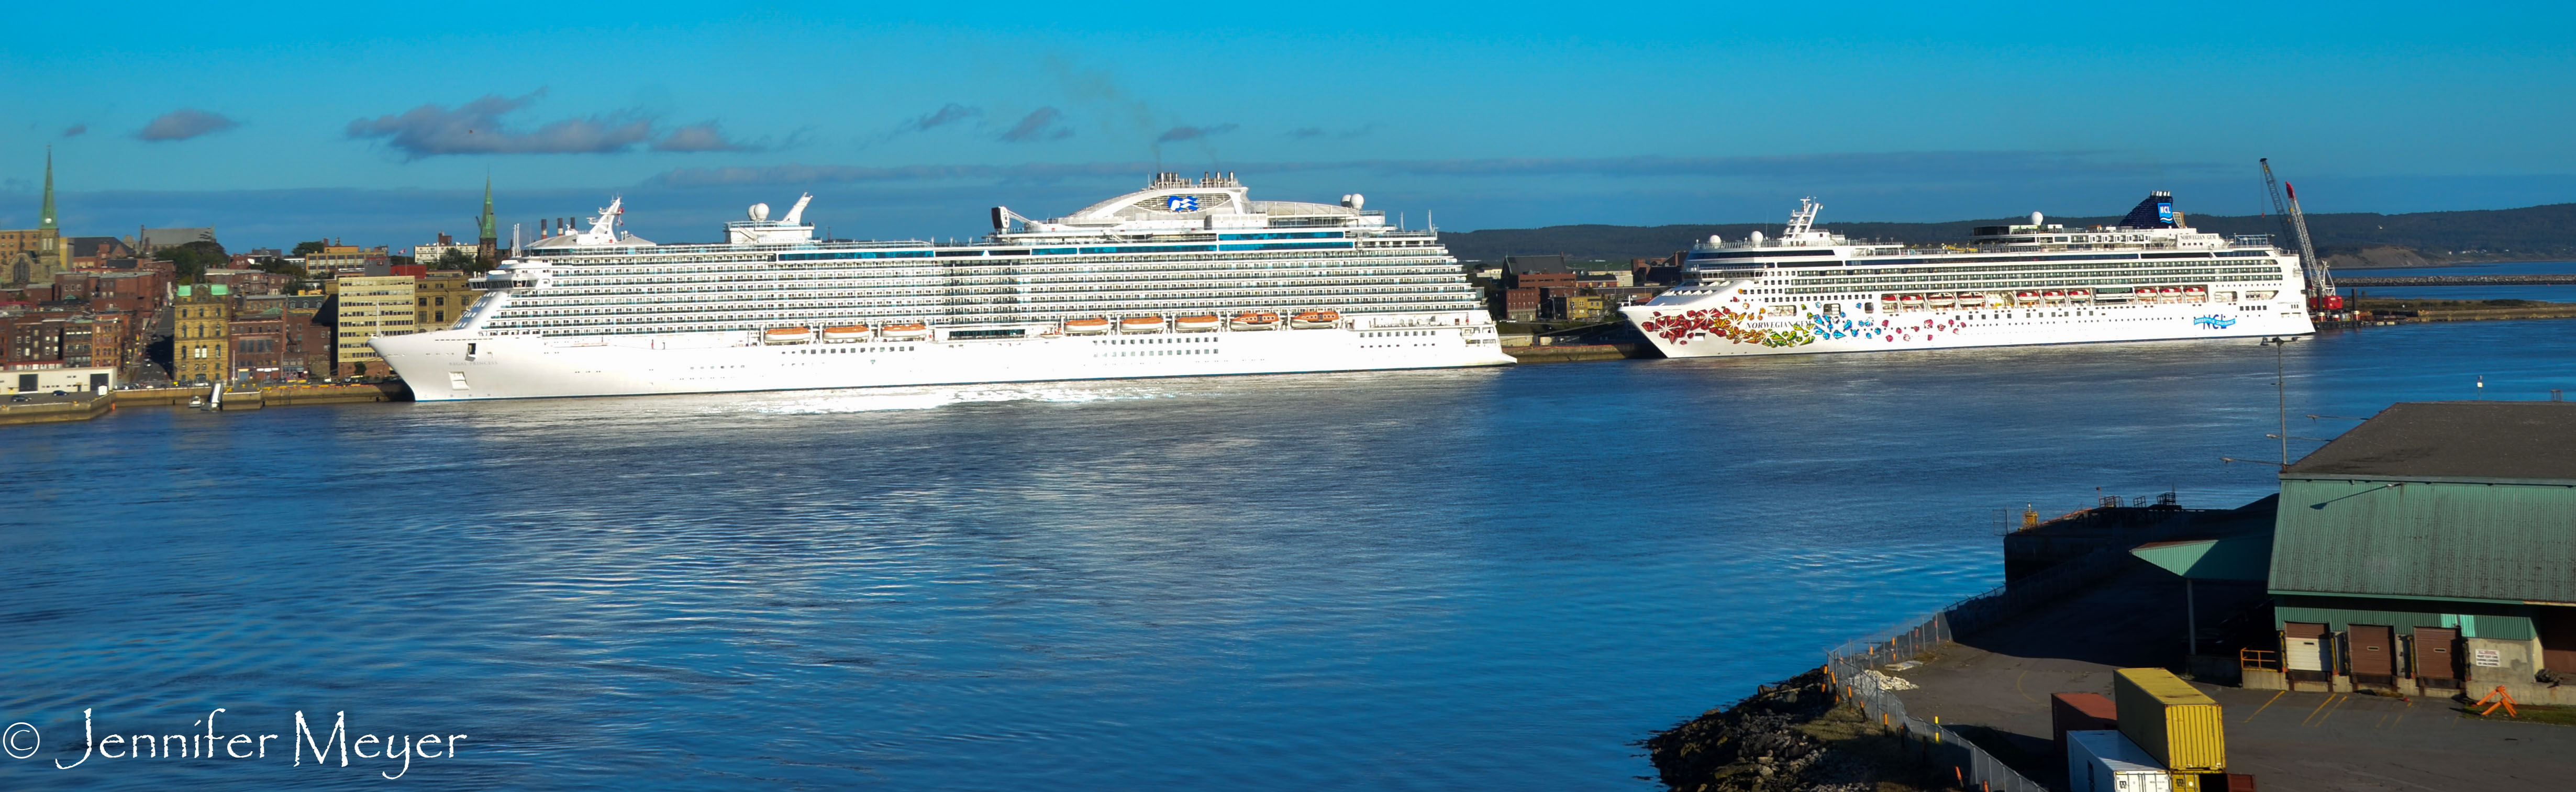 Giant cruise ships in St. John.